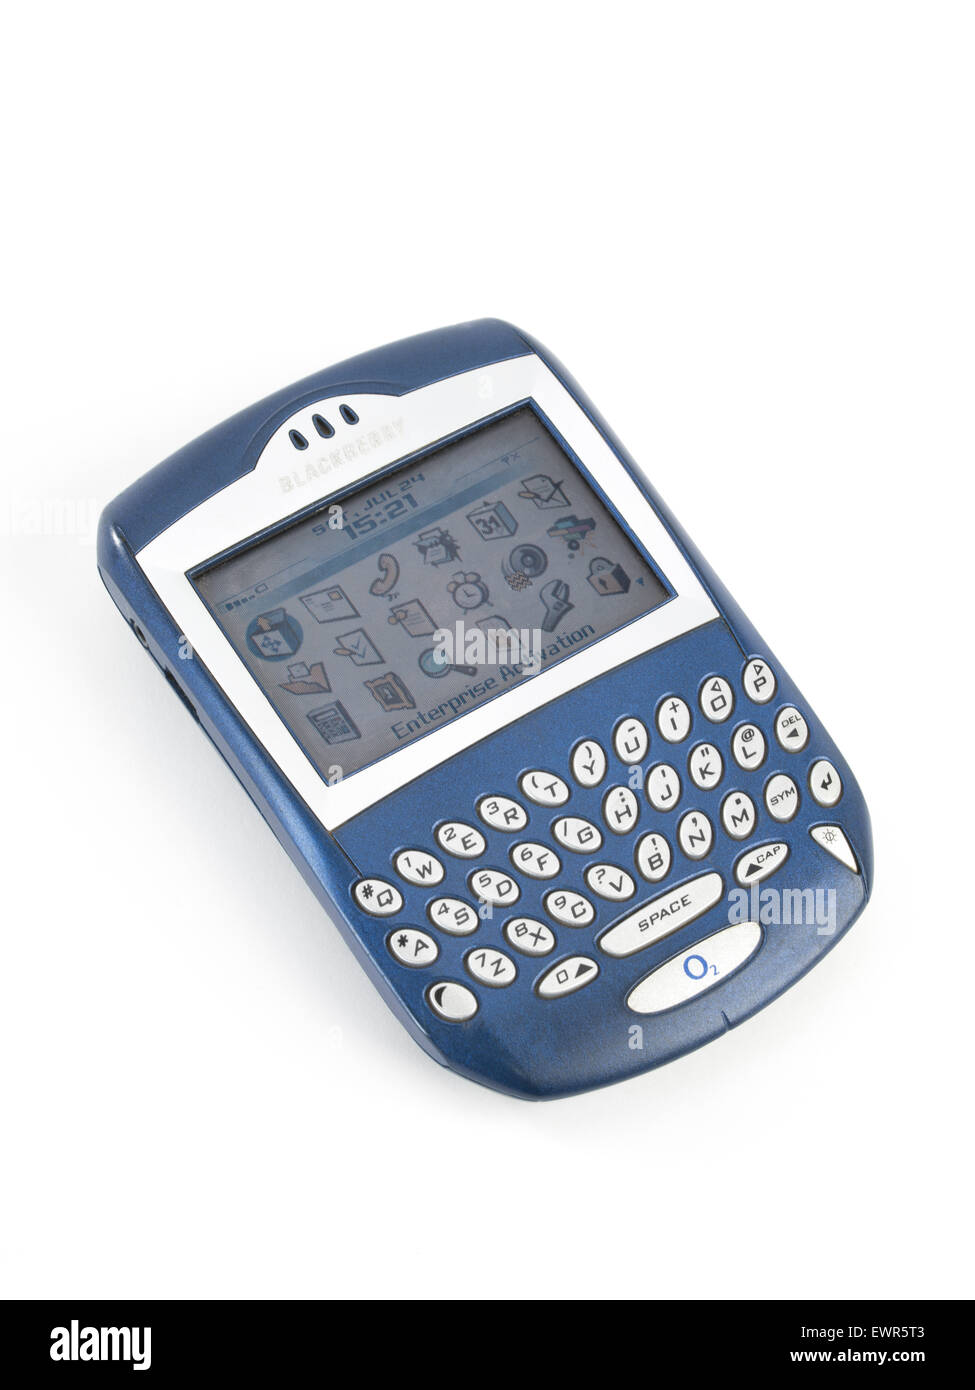 BlackBerry 7230 Handy 2003 veröffentlicht Stockfoto